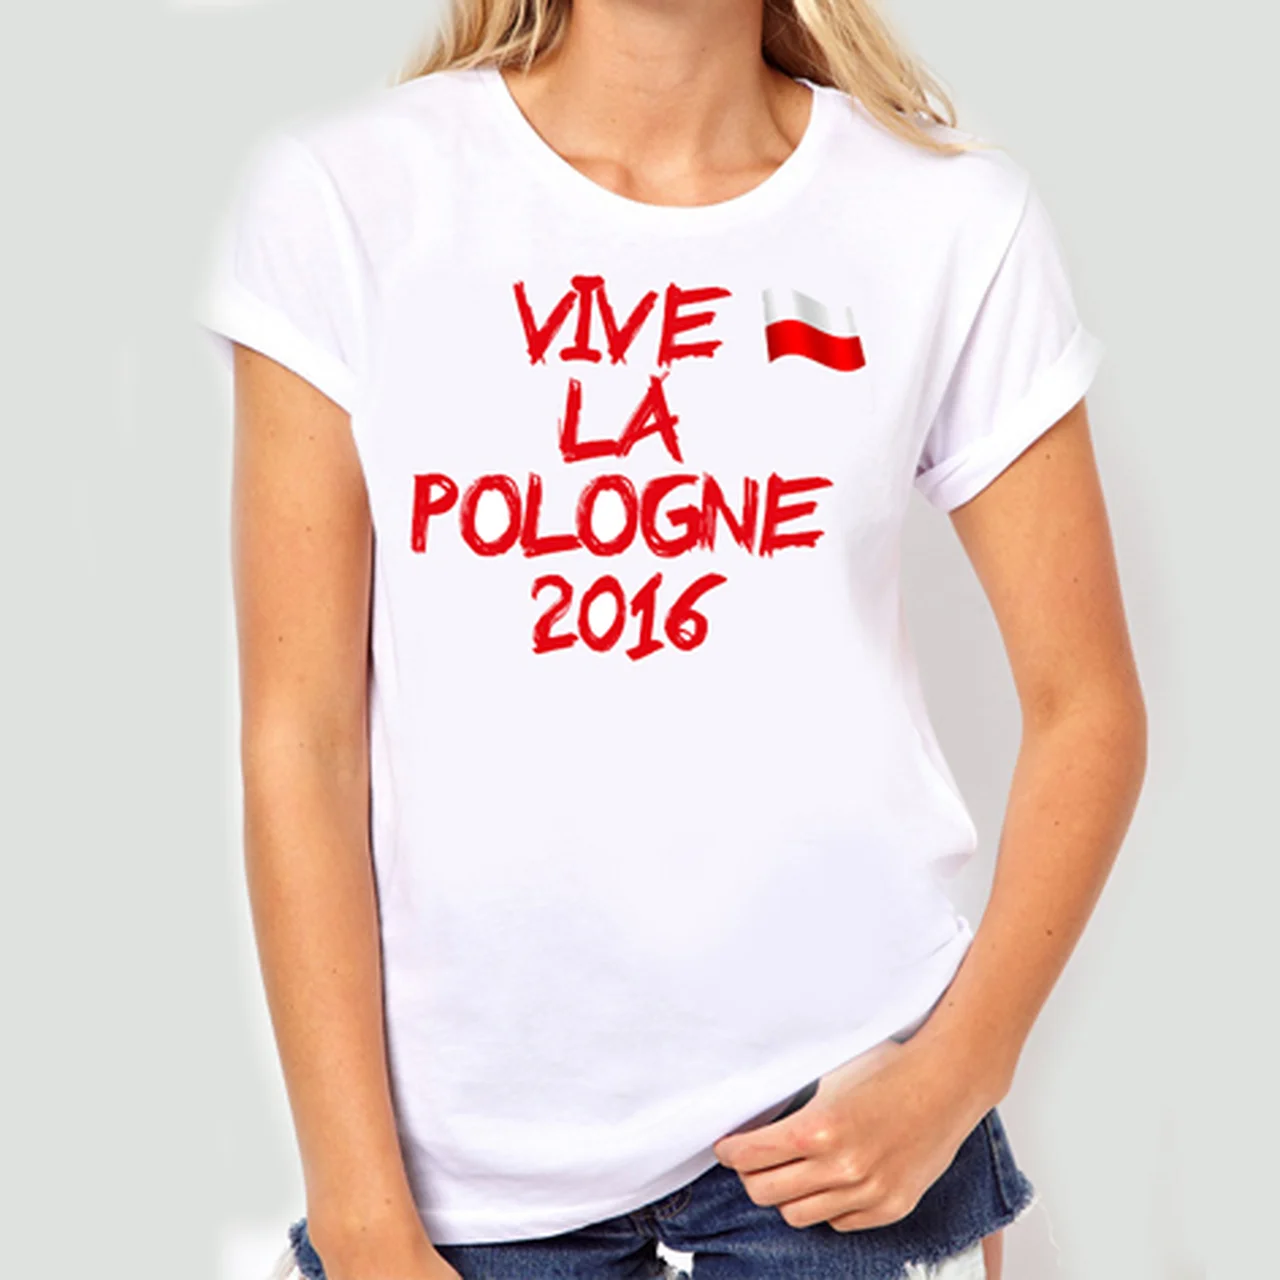 VIVE LA POLOGNE 2016!